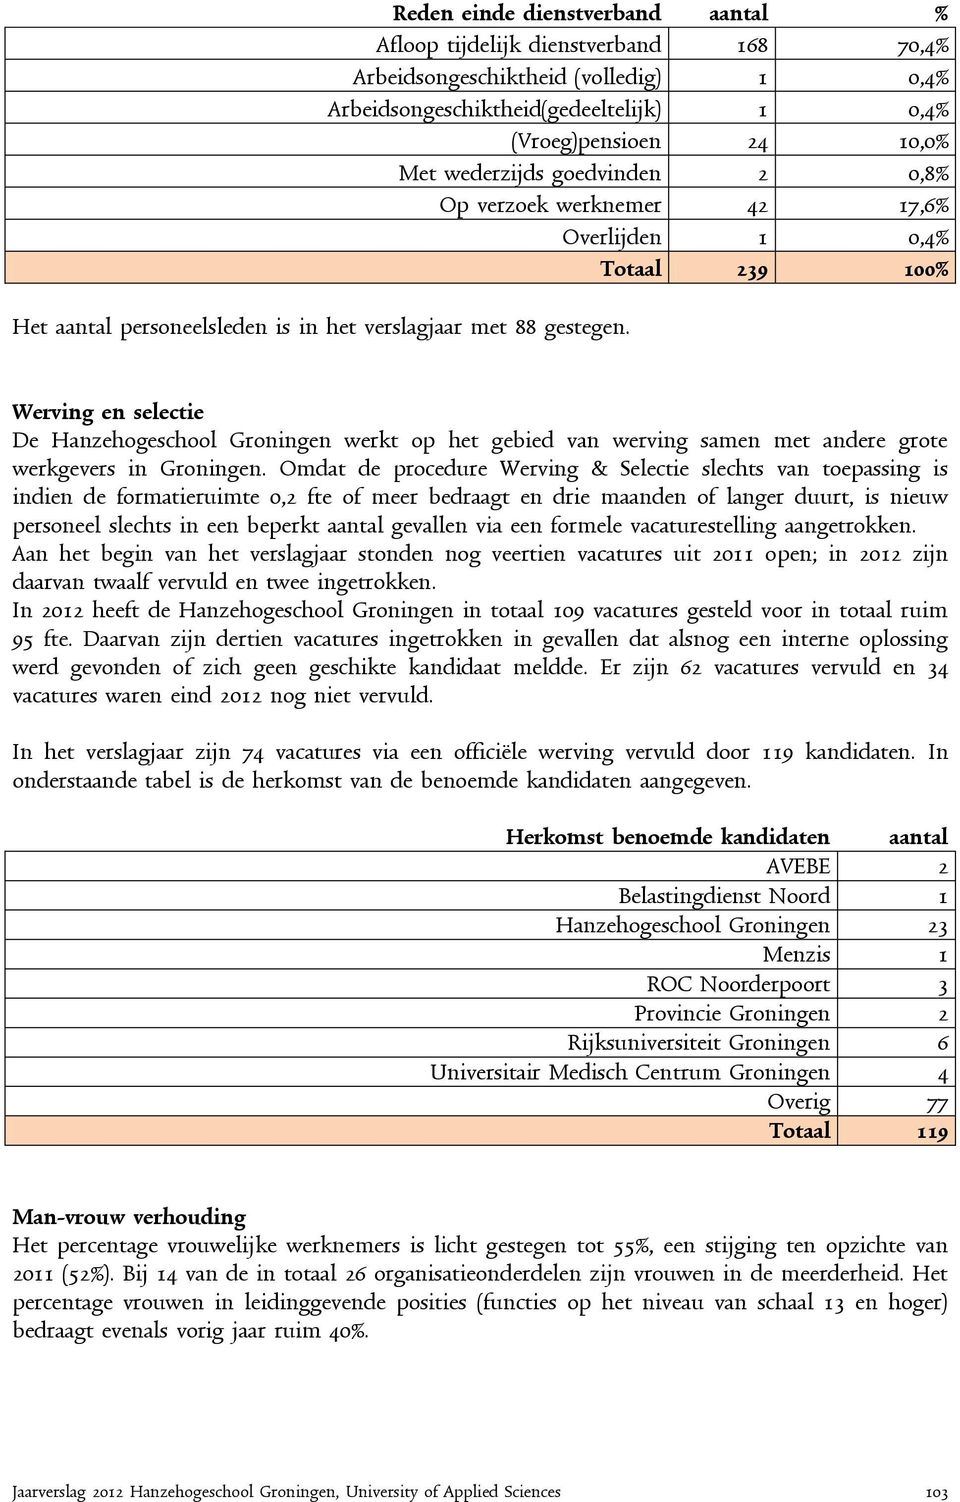 goedvinden 2 0,8% Op verzoek werknemer 42 17,6% Overlijden 1 0,4% Totaal 239 100% Werving en selectie De Hanzehogeschool Groningen werkt op het gebied van werving samen met andere grote werkgevers in